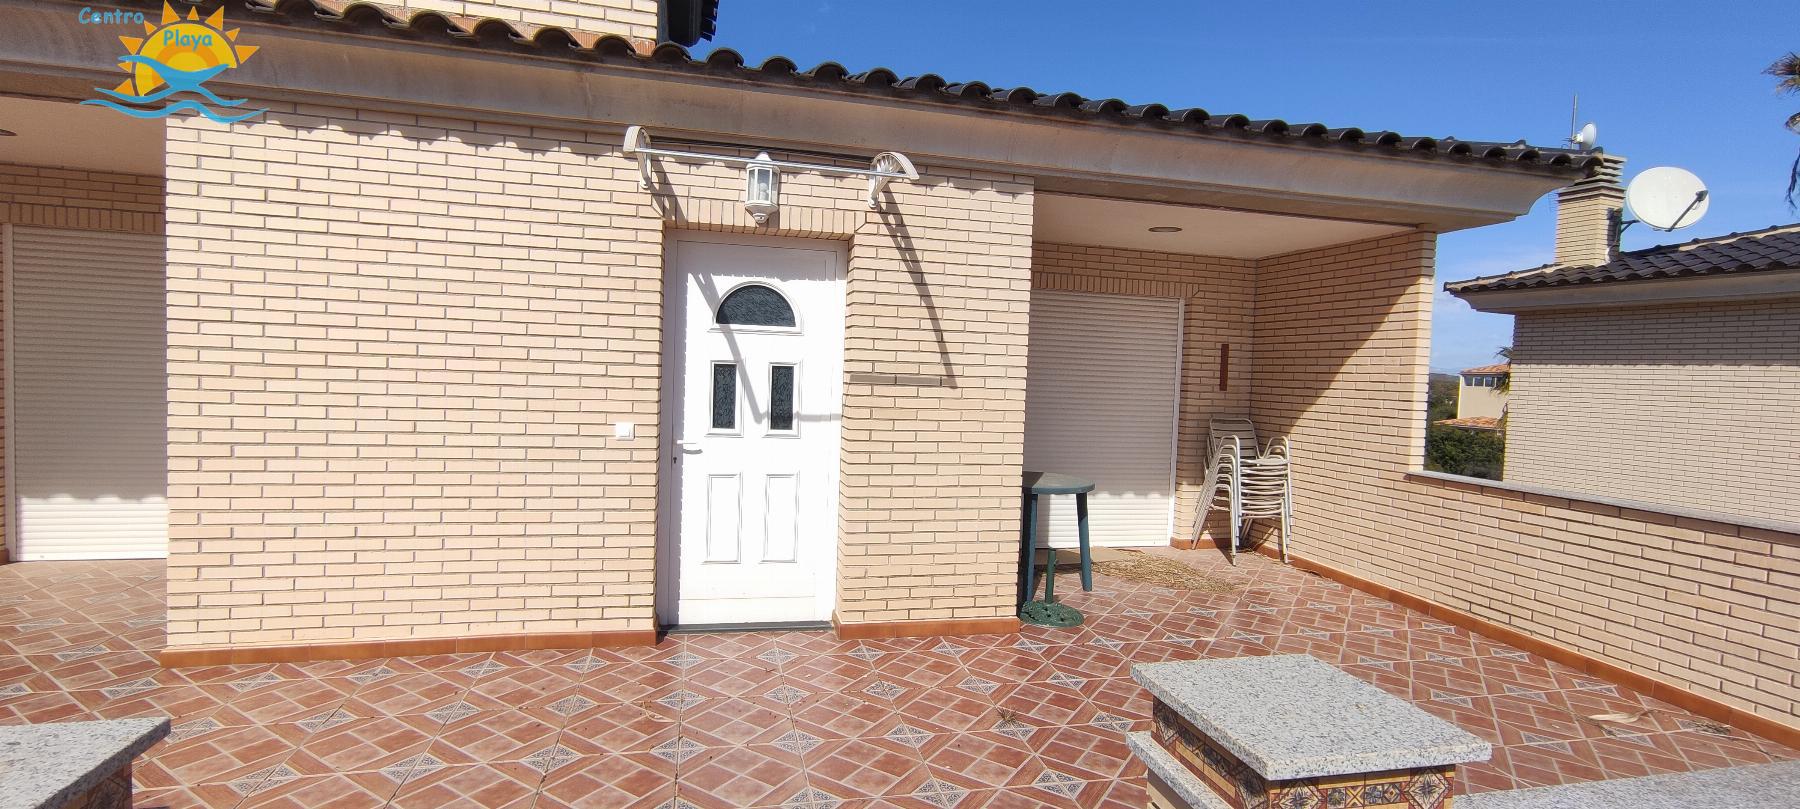 Verkoop van villa in Peñíscola